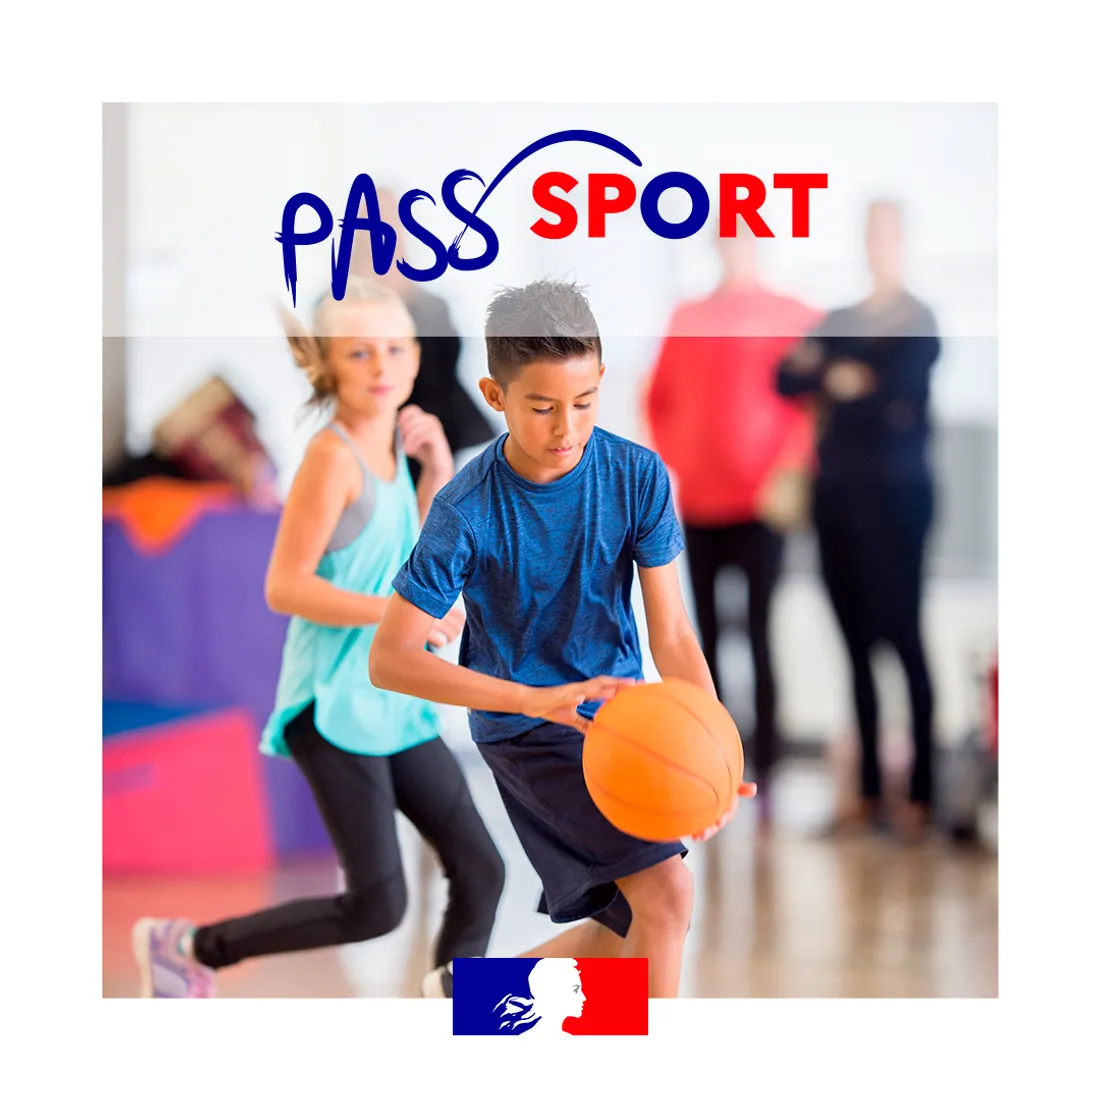 [ ECONOMIE ] La Ville d'Arles pousse les jeunes au sport